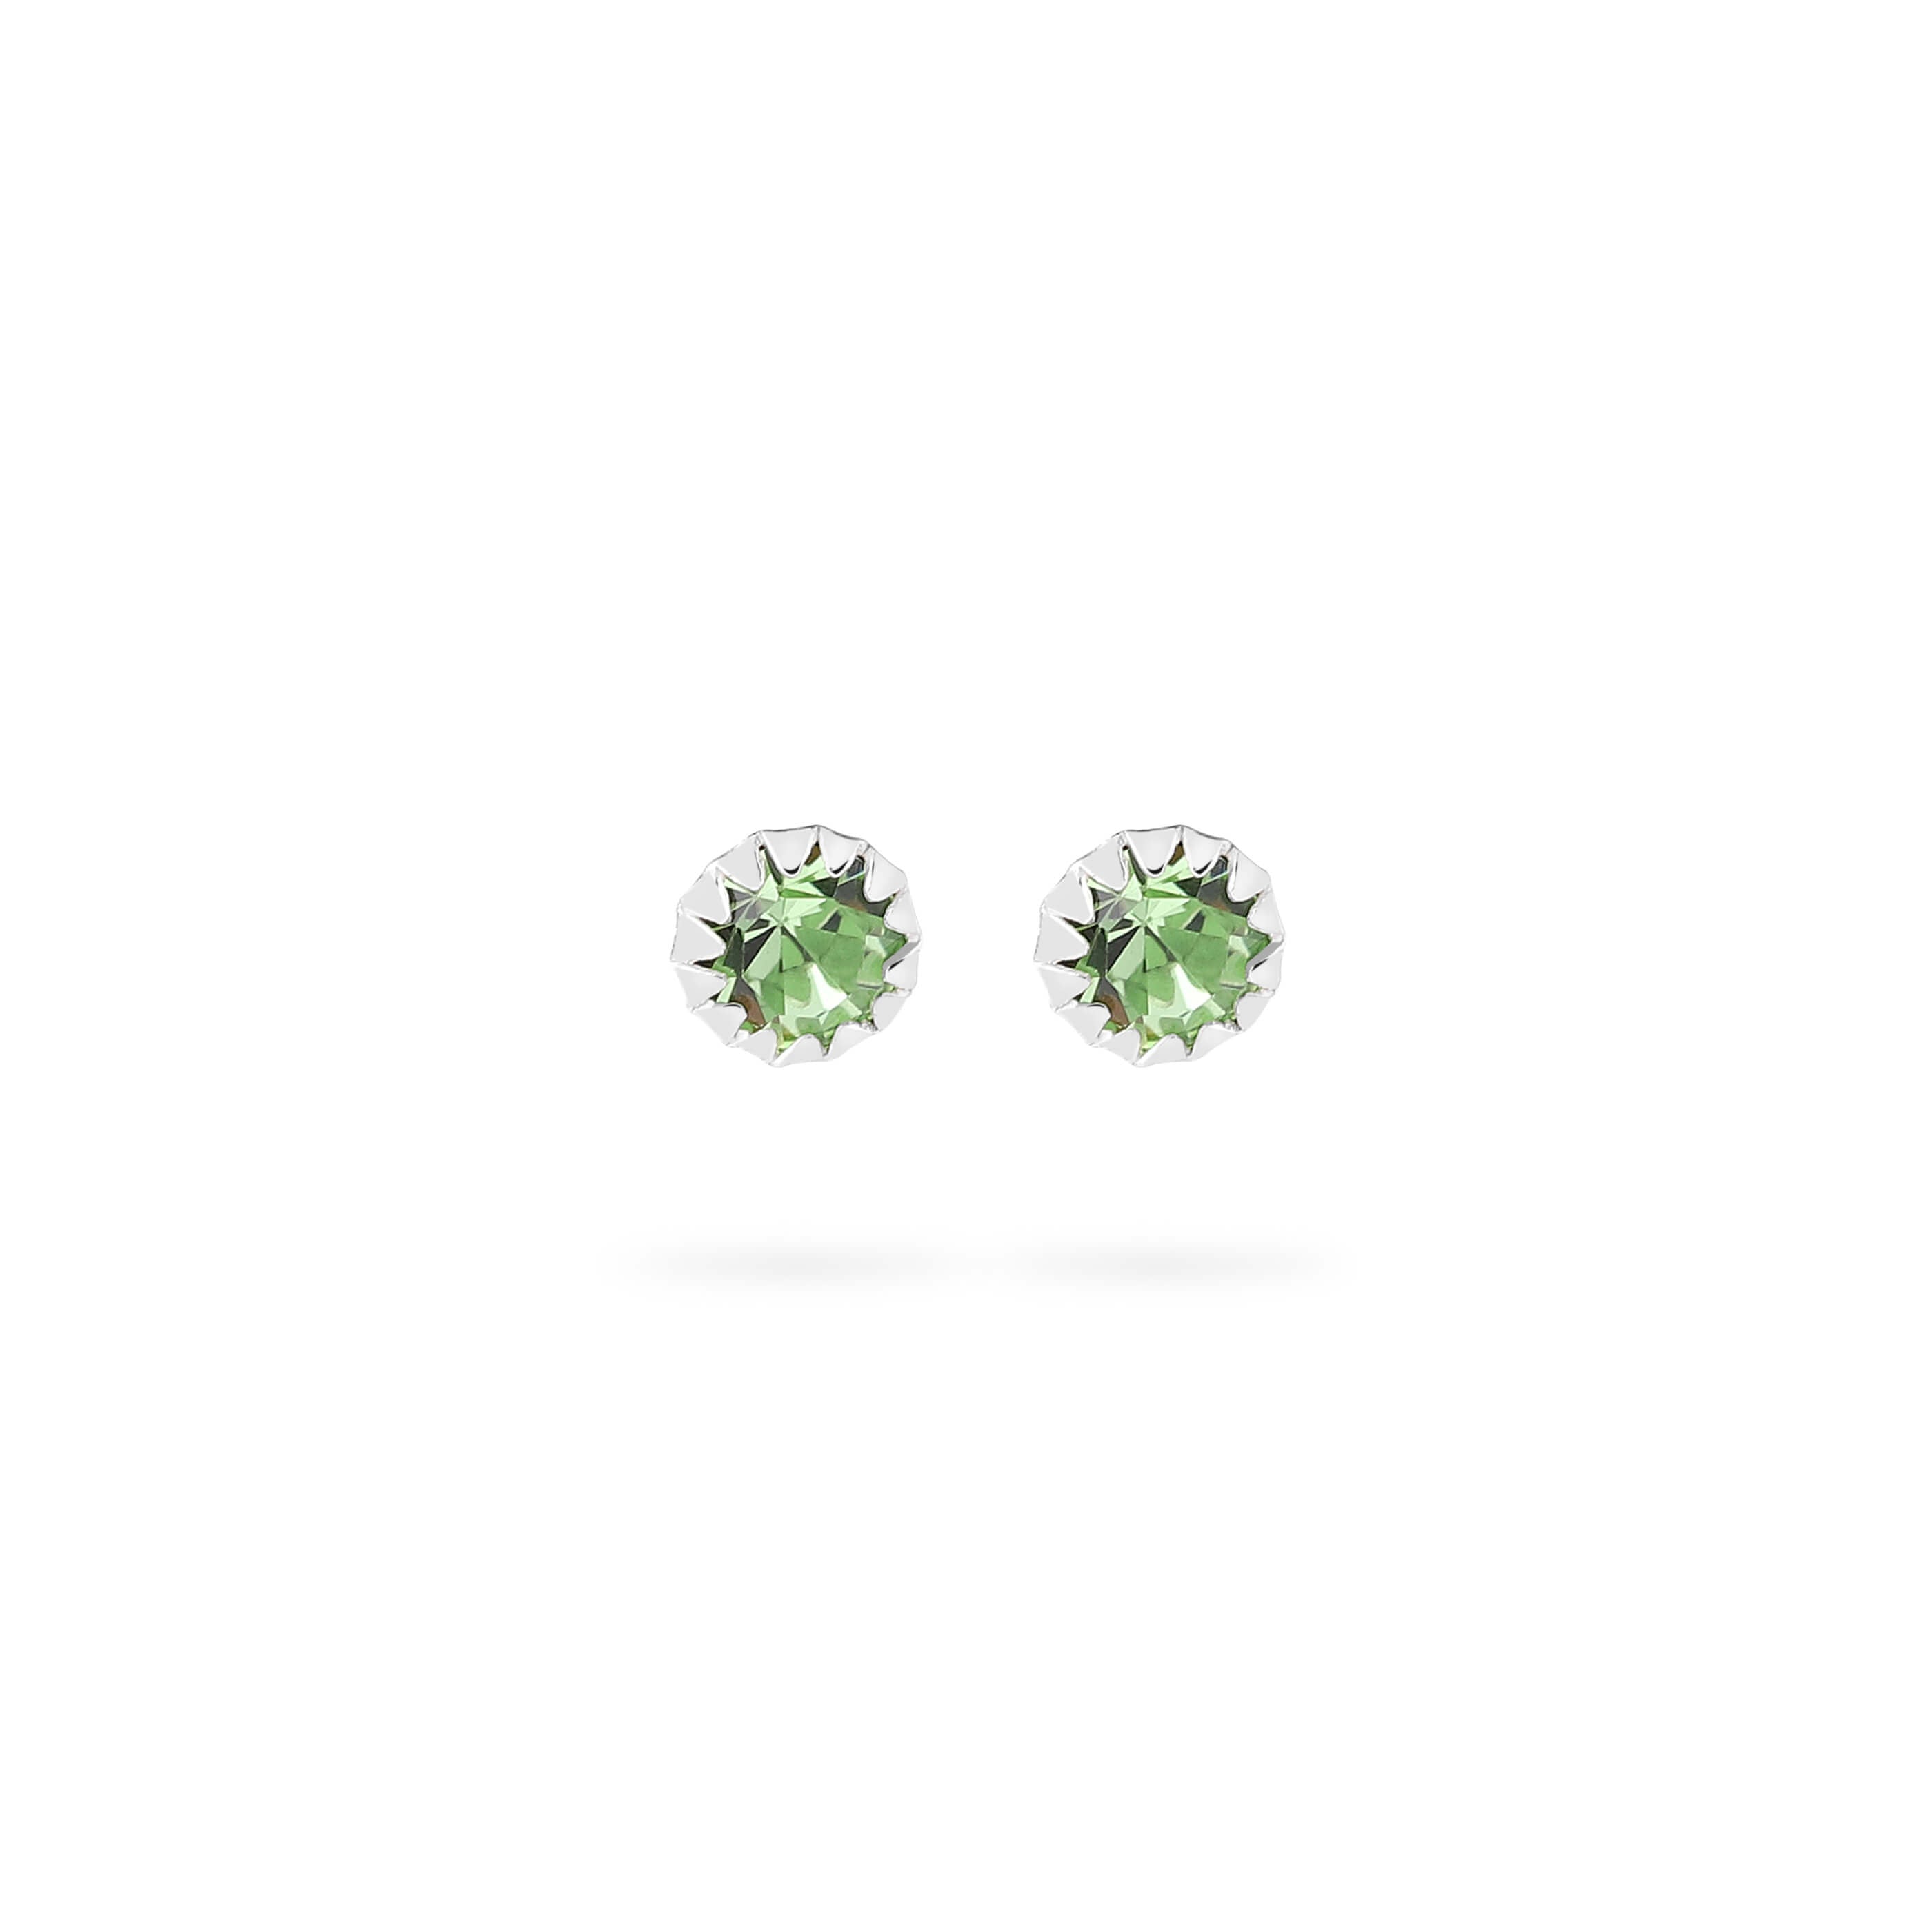 Green Tourmaline Stud Earrings 925 Silver